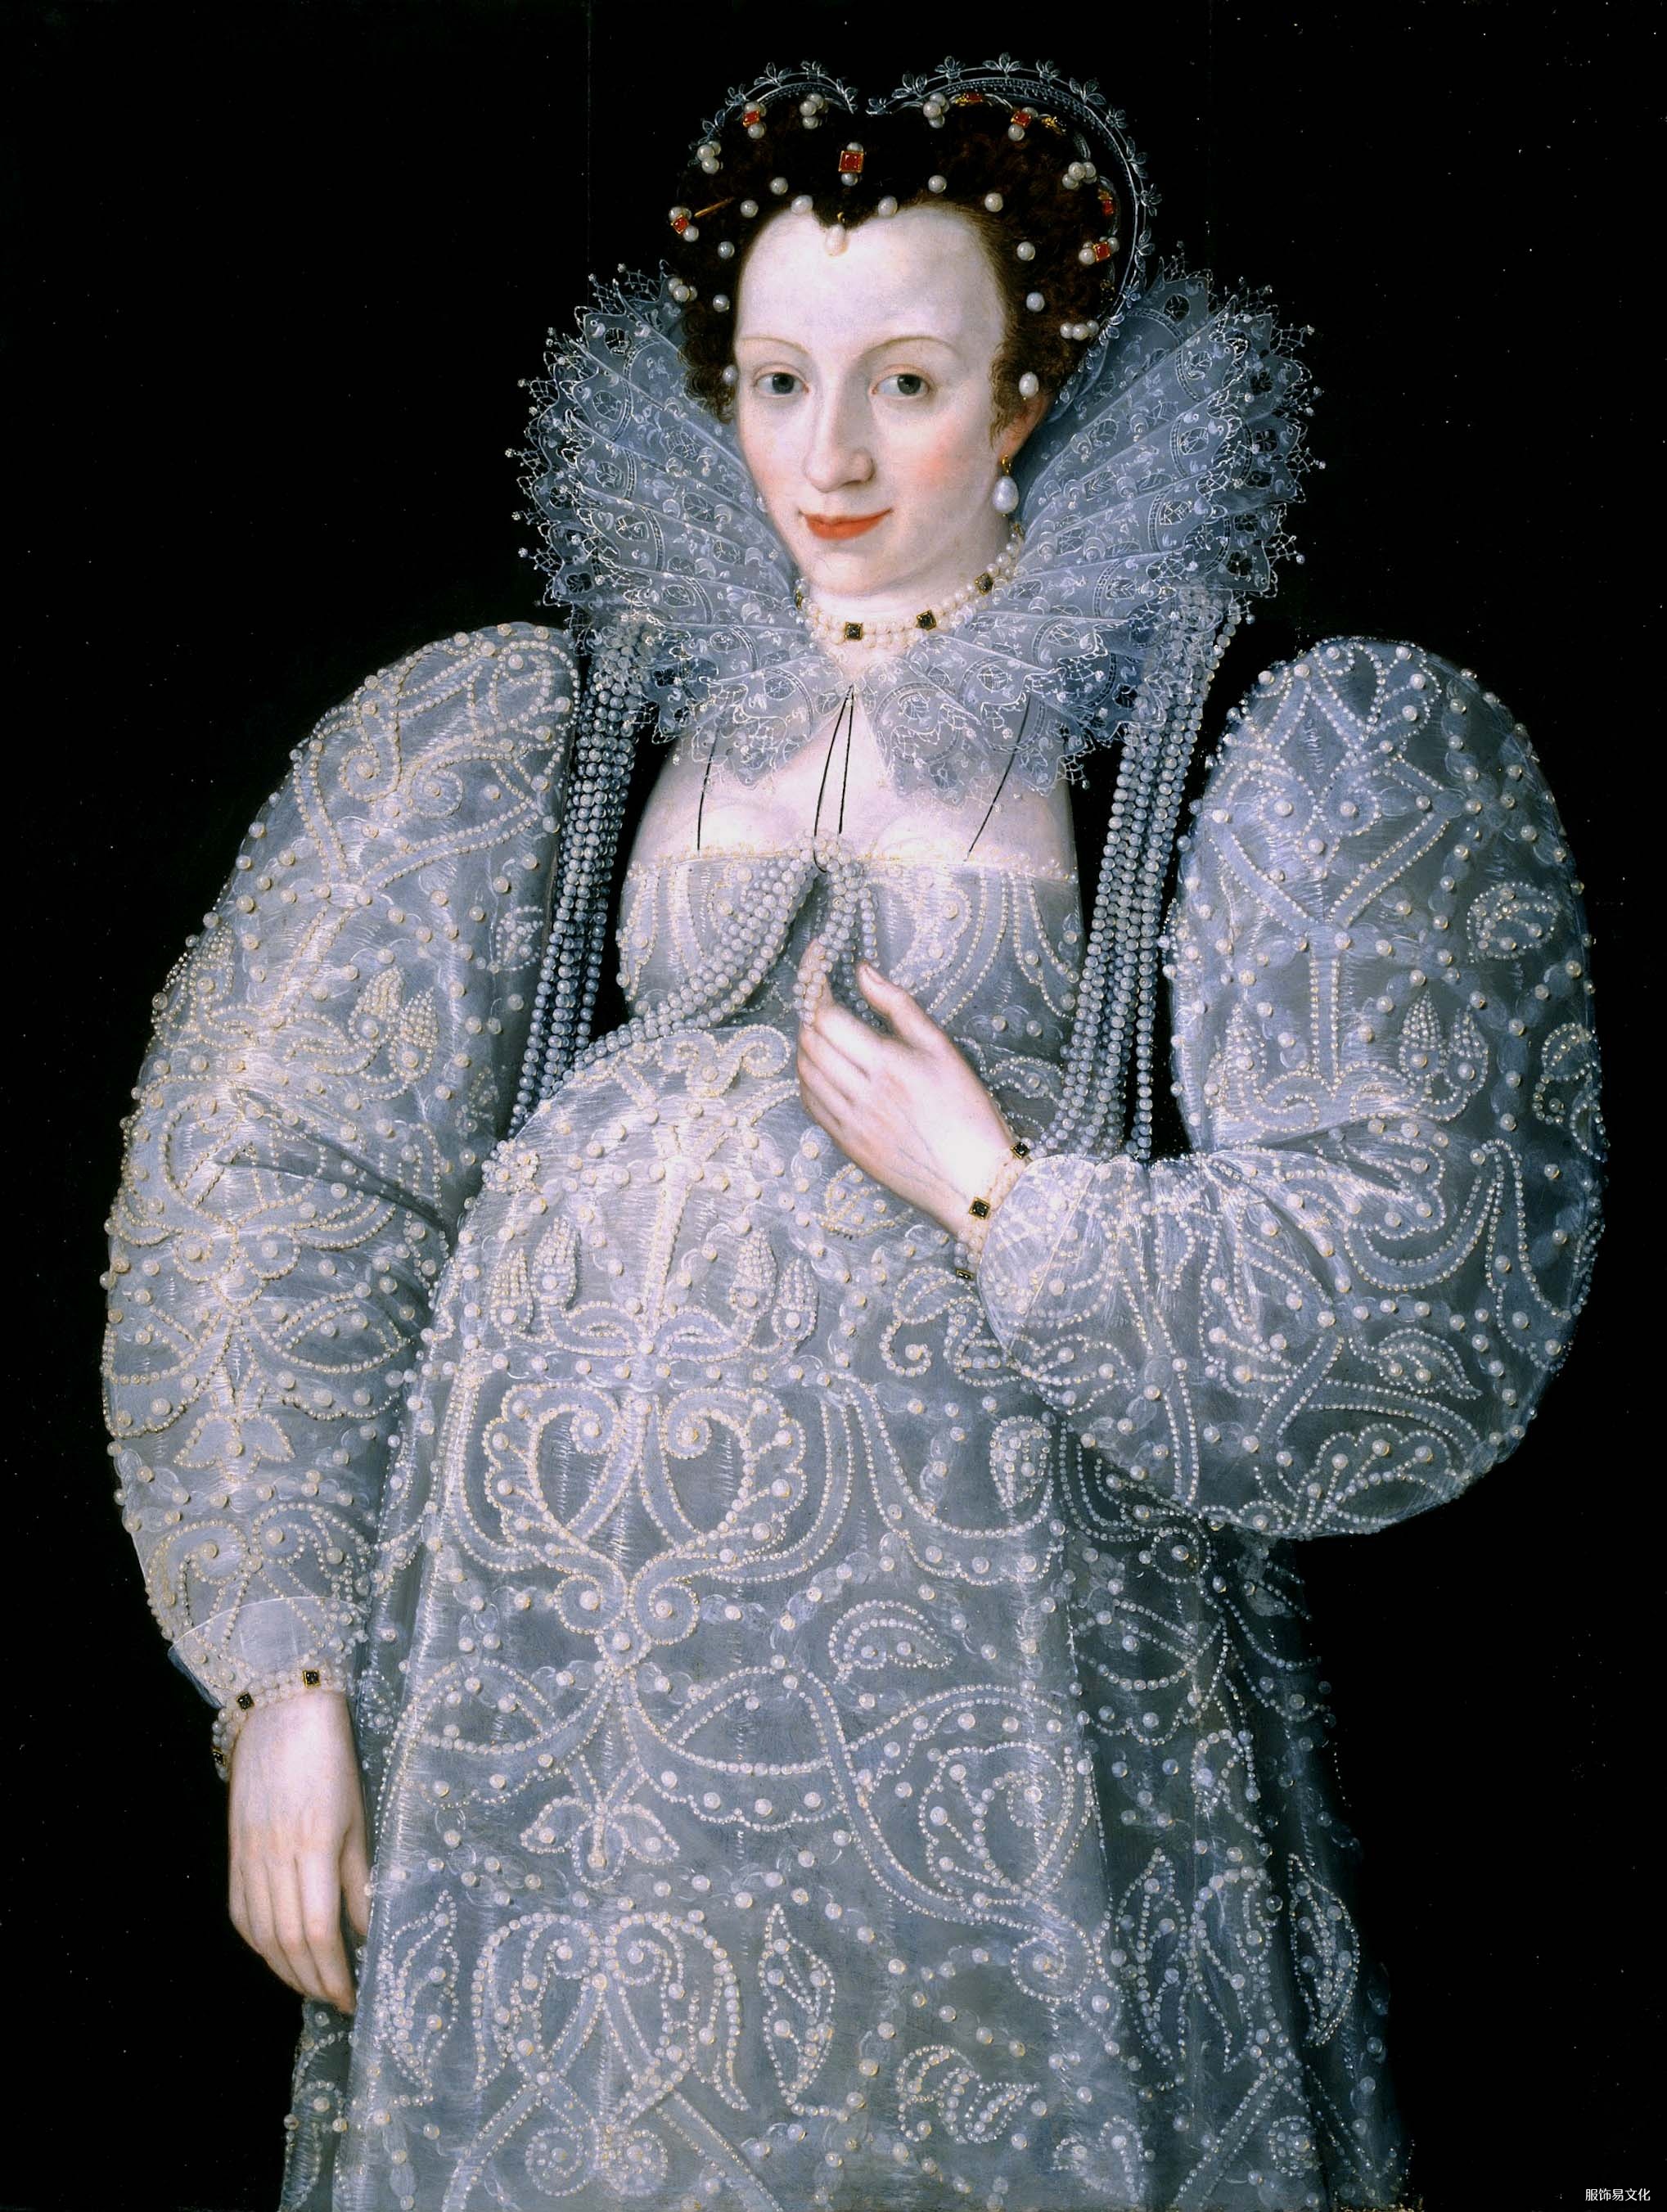 孕妇和妓女服饰时尚 – 16 世纪和 17 世纪